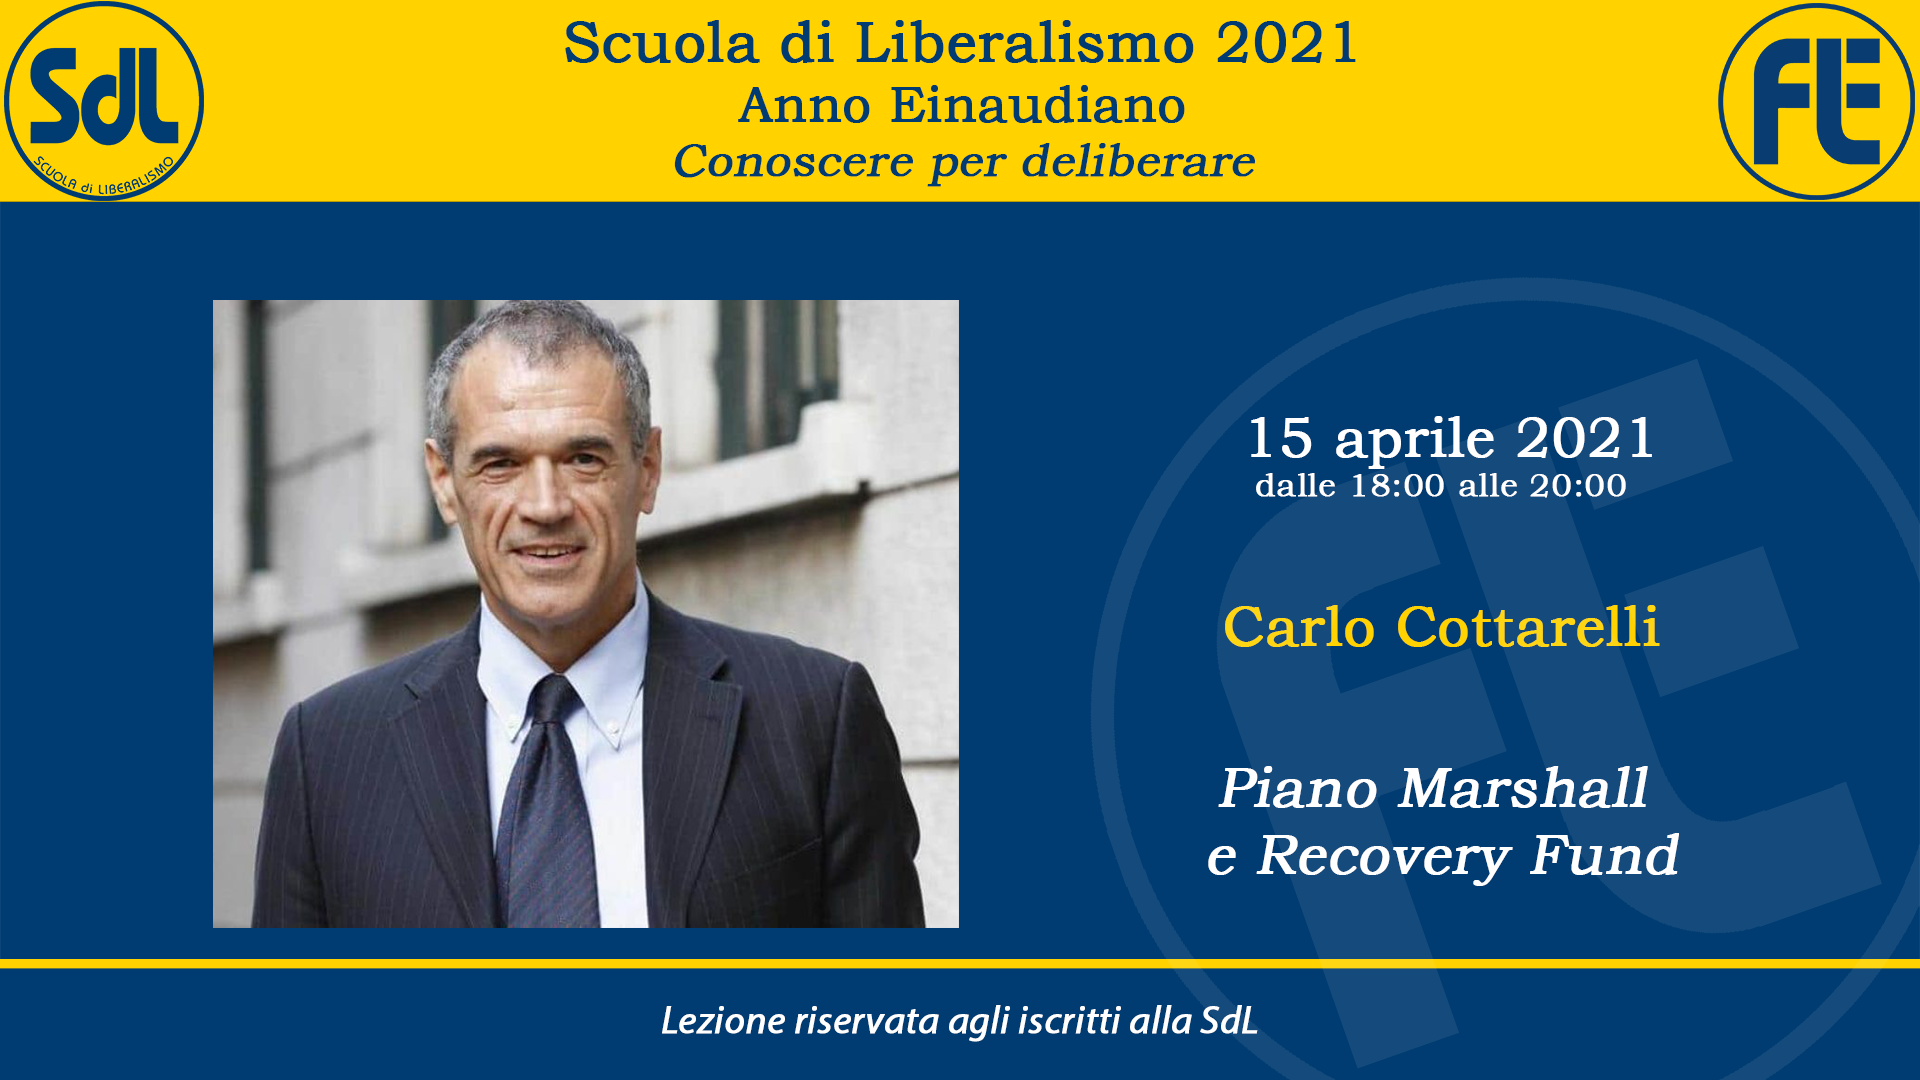 Scuola di Liberalismo 2021 – Carlo Cottarelli sul tema “Piano Marshall e Recovery Fund”